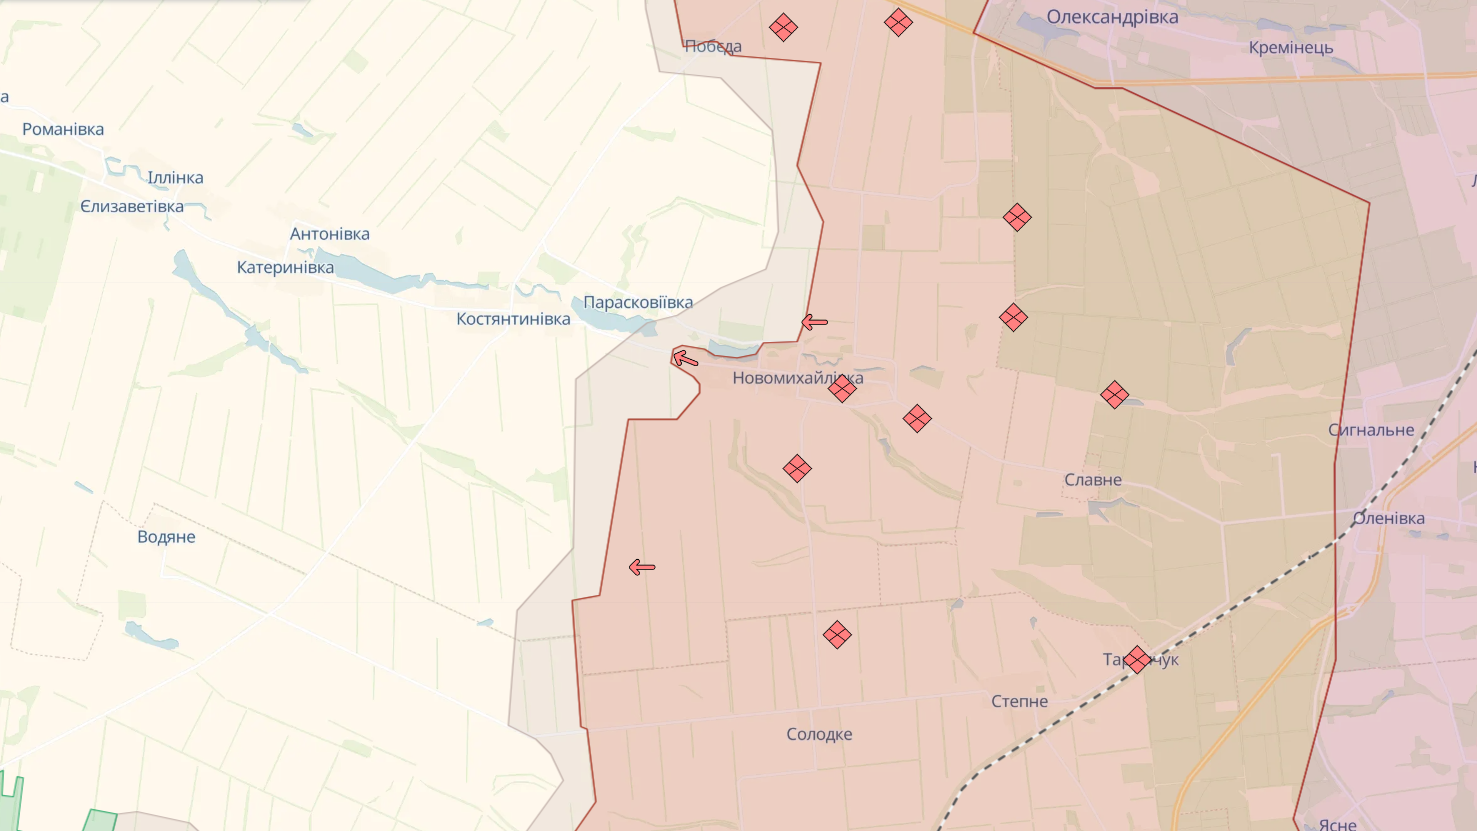 Силы обороны вышли из Бердичей, Семеновки и Новомихайловки Донецкой области. Карта